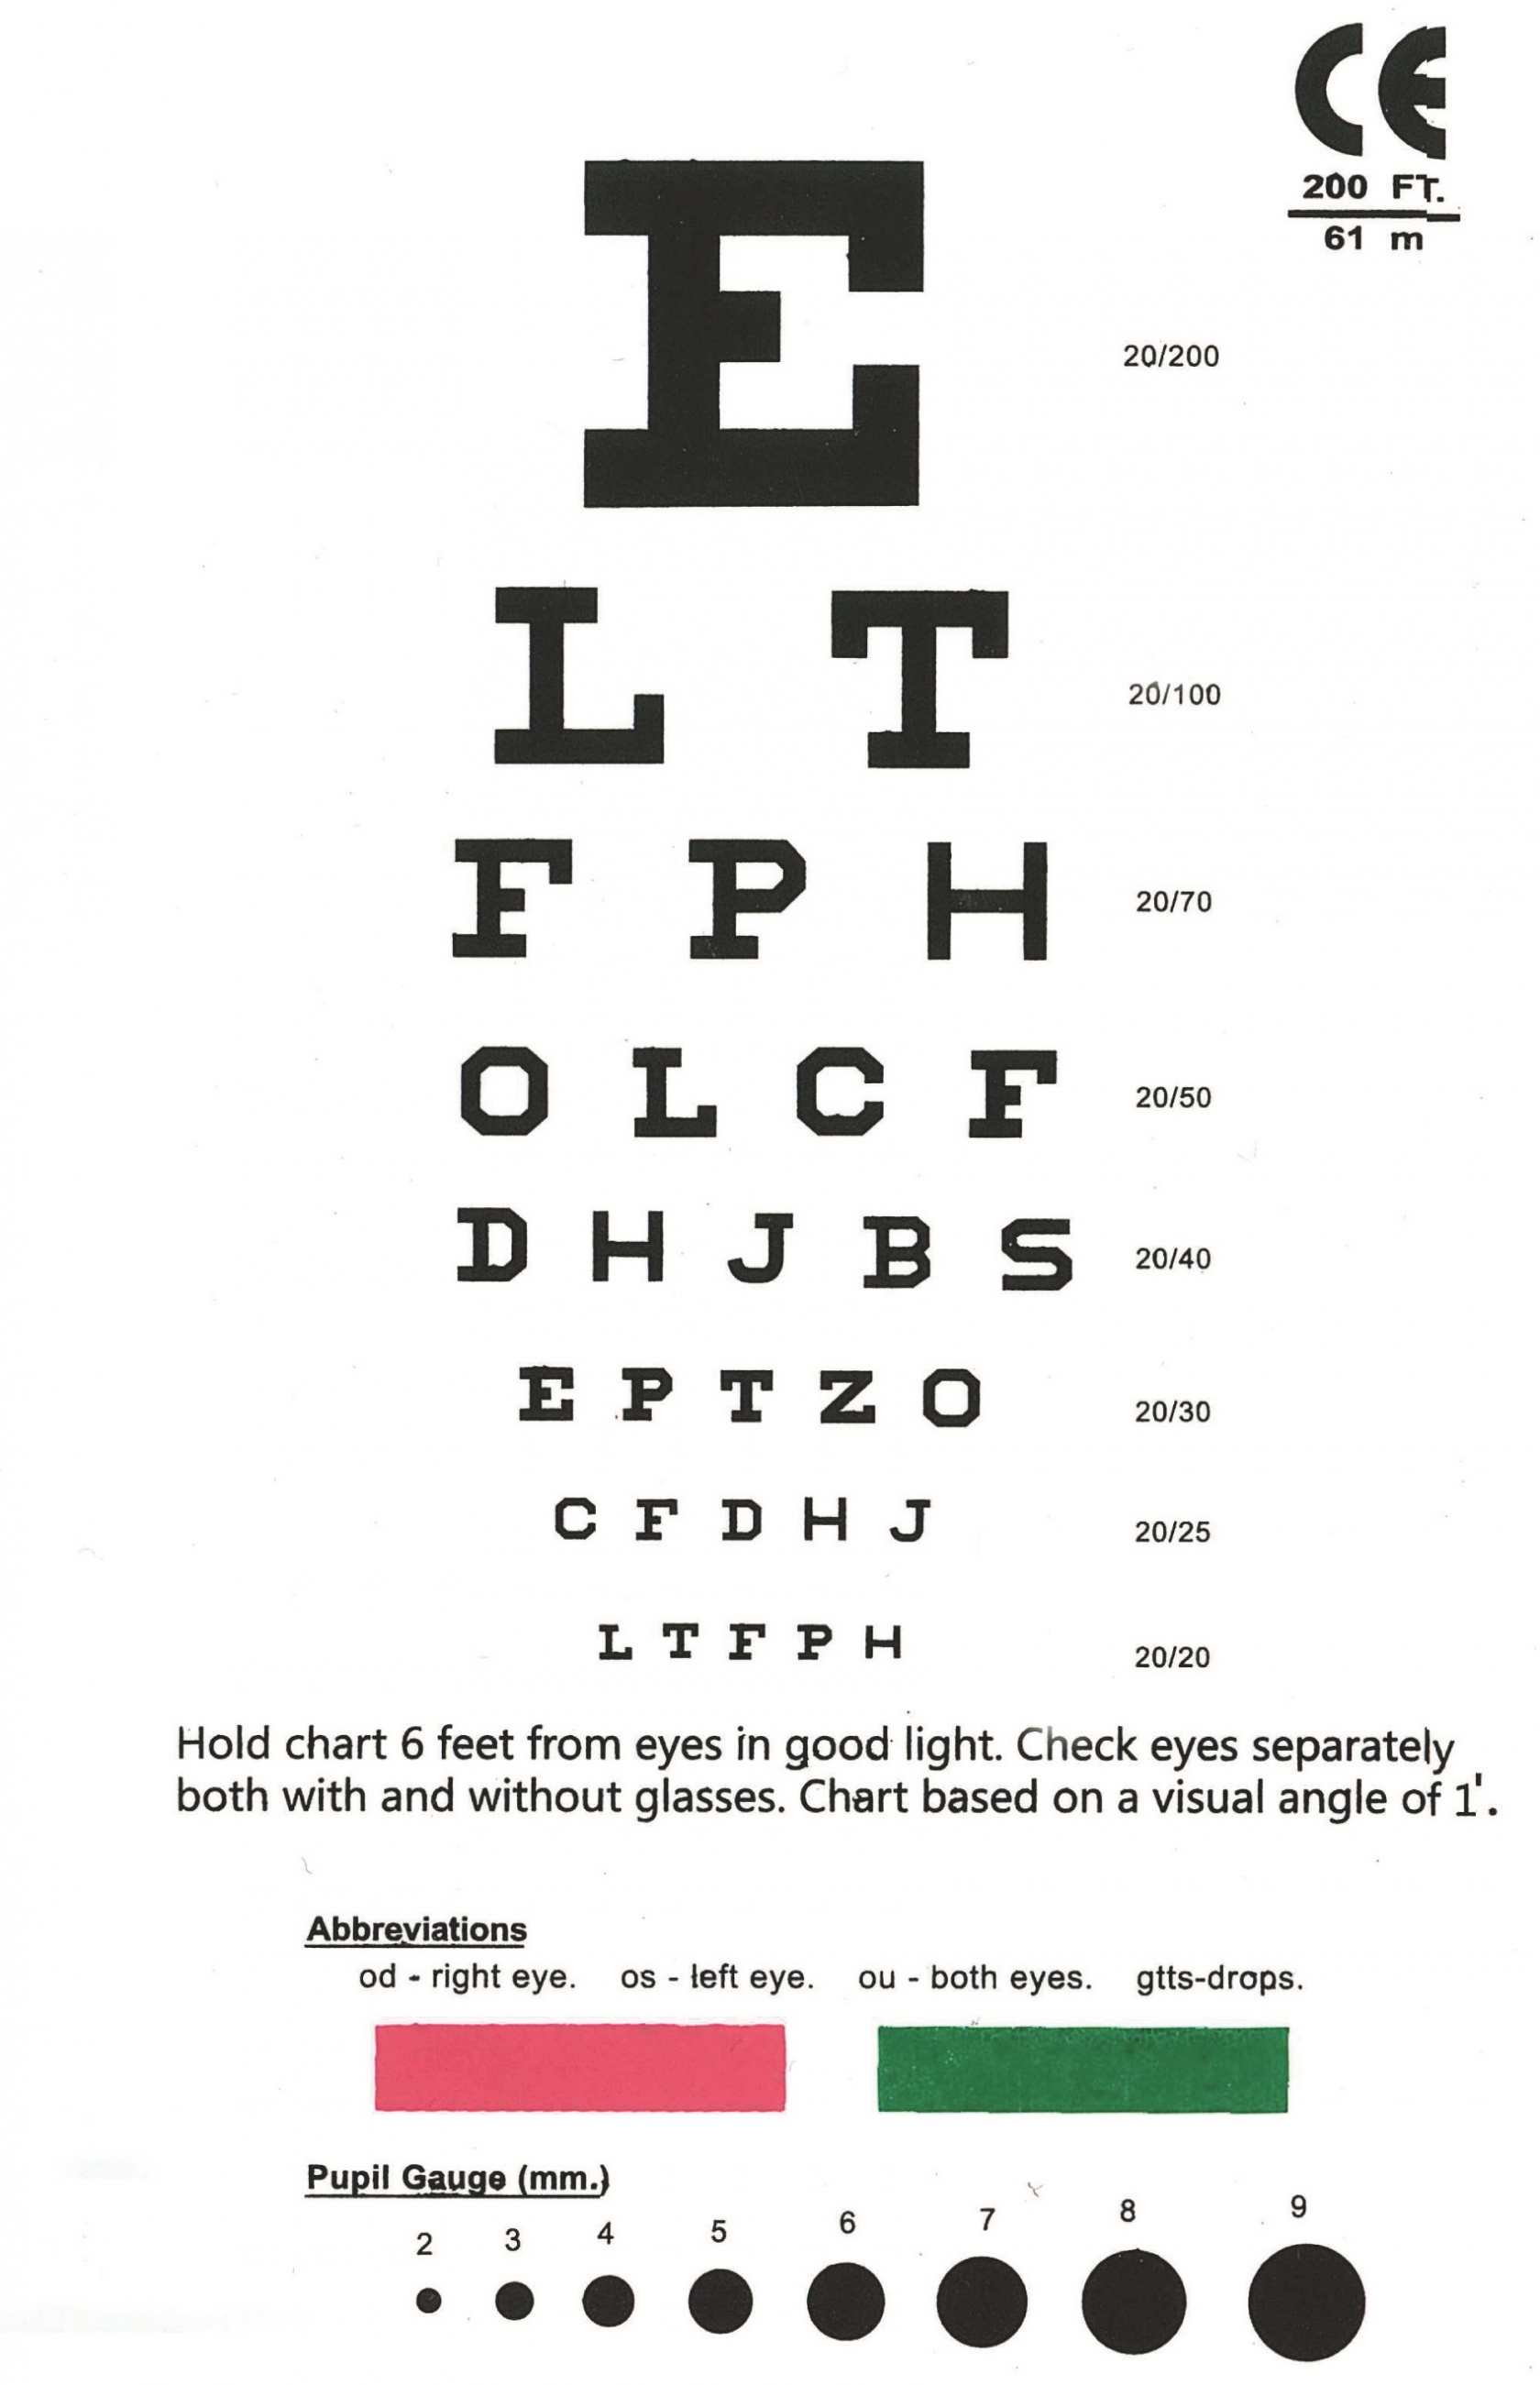 Eye Chart Snellen Pocket Eye Chart